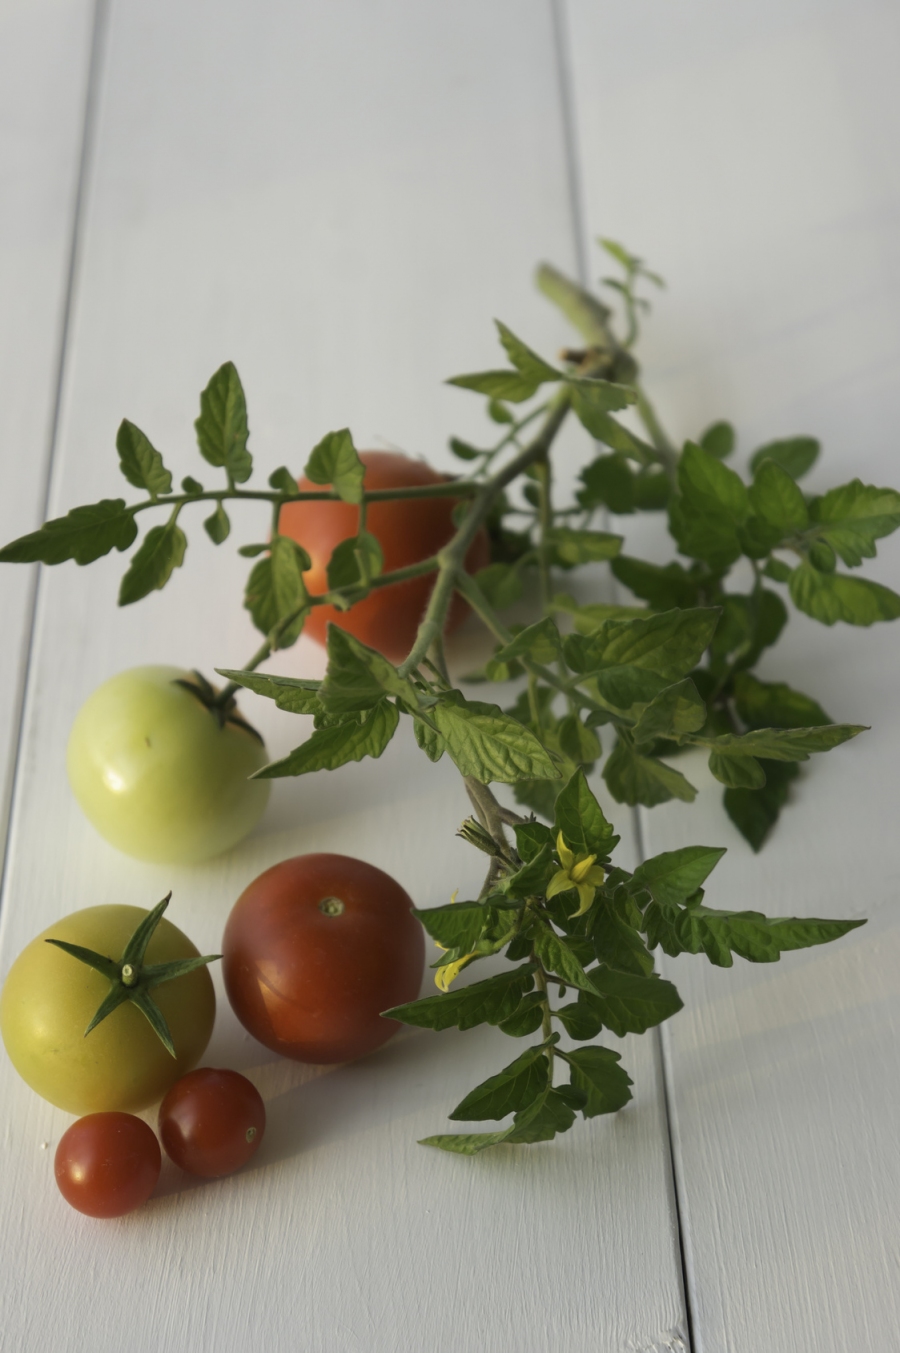 Fliegen mögen den Geruch von Tomatenpflanzen nicht. Legt man Zweige um die Mülltonne oder in die Küche, sind sie bald verschwunden.